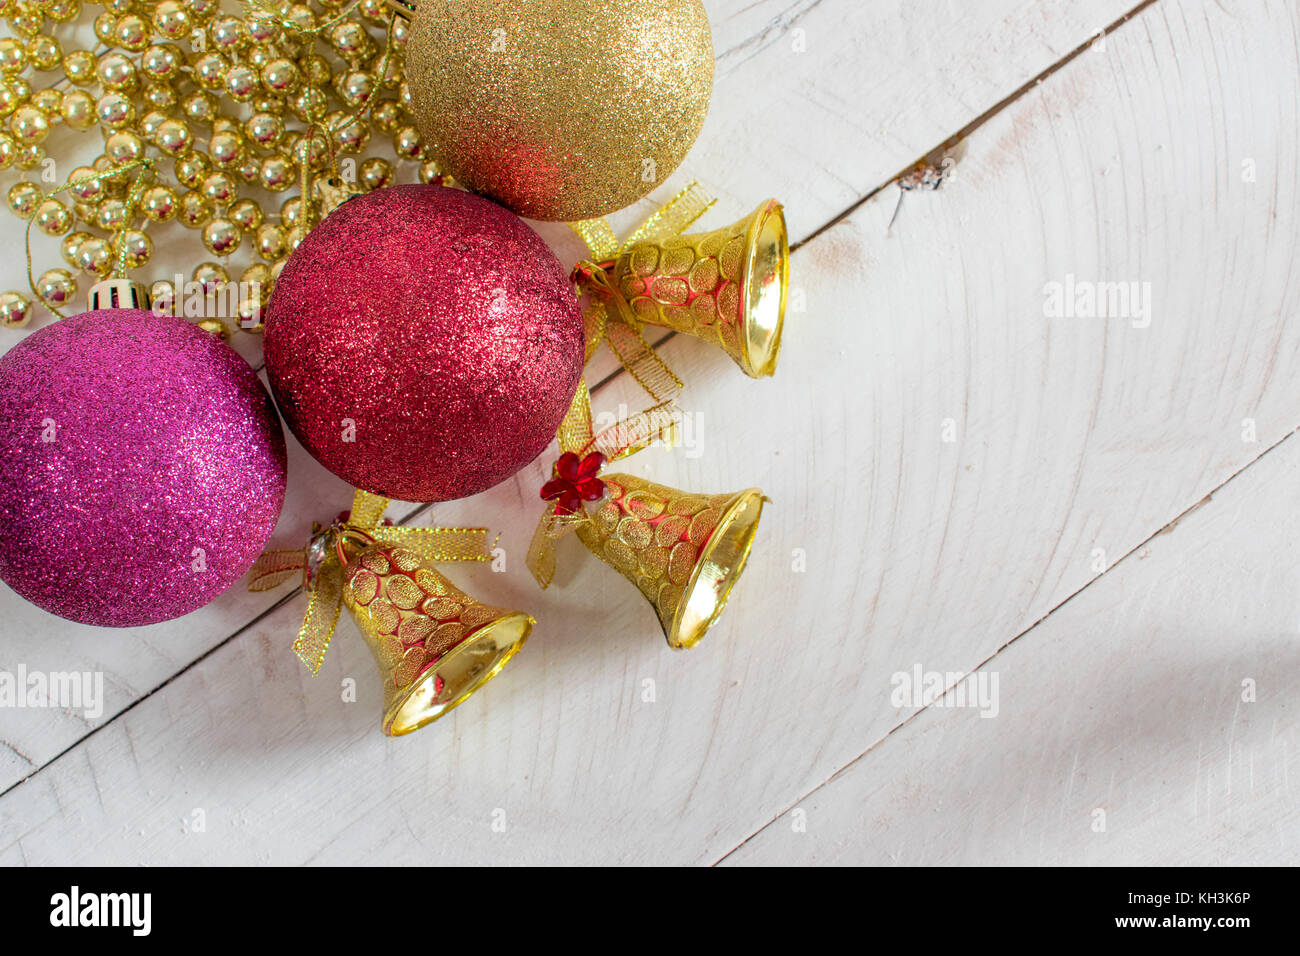 Decoración de Navidad, cadenas, campanas y coloridas bolas reflectantes, encima de una superficie de madera blanca y fondo blanco. Foto de stock